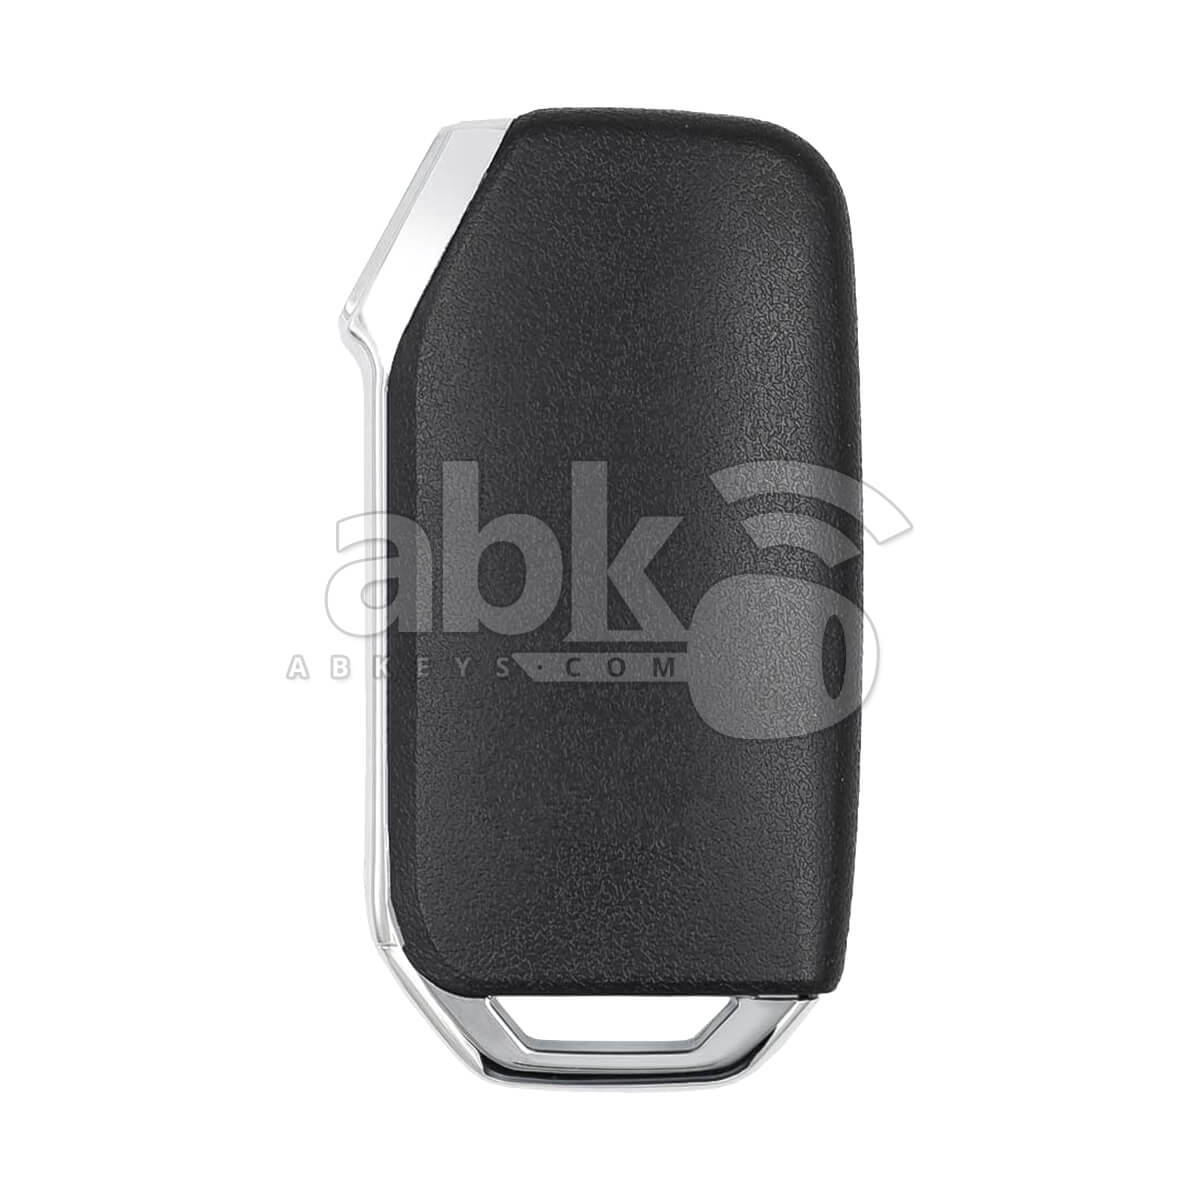 Kia Telluride 2020+ Smart Key 4Buttons 95440-S9000 433MHz TQ8-FOB-4F24 - ABK-3633 - ABKEYS.COM